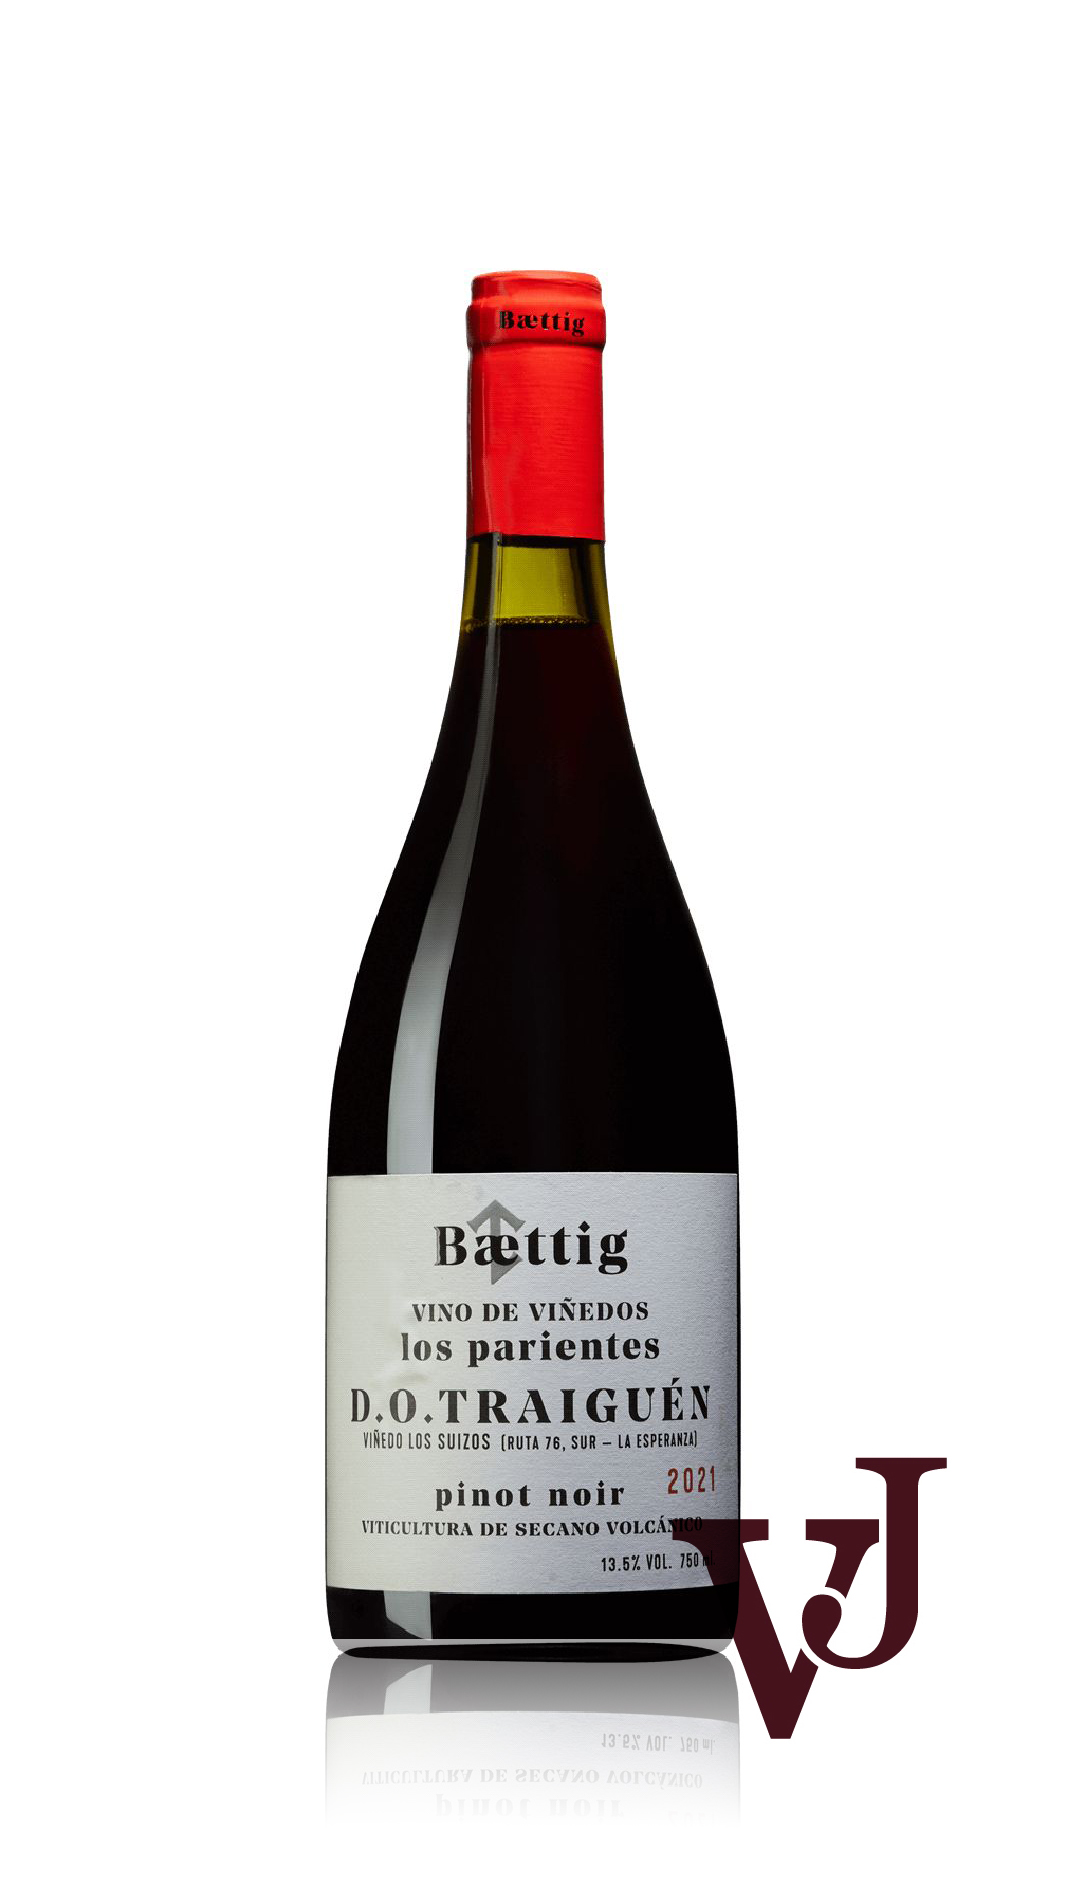 Rött Vin - Baettig Los Parientes Pinot Noir 2021 artikel nummer 9283301 från producenten Via Vinica SpA från Chile